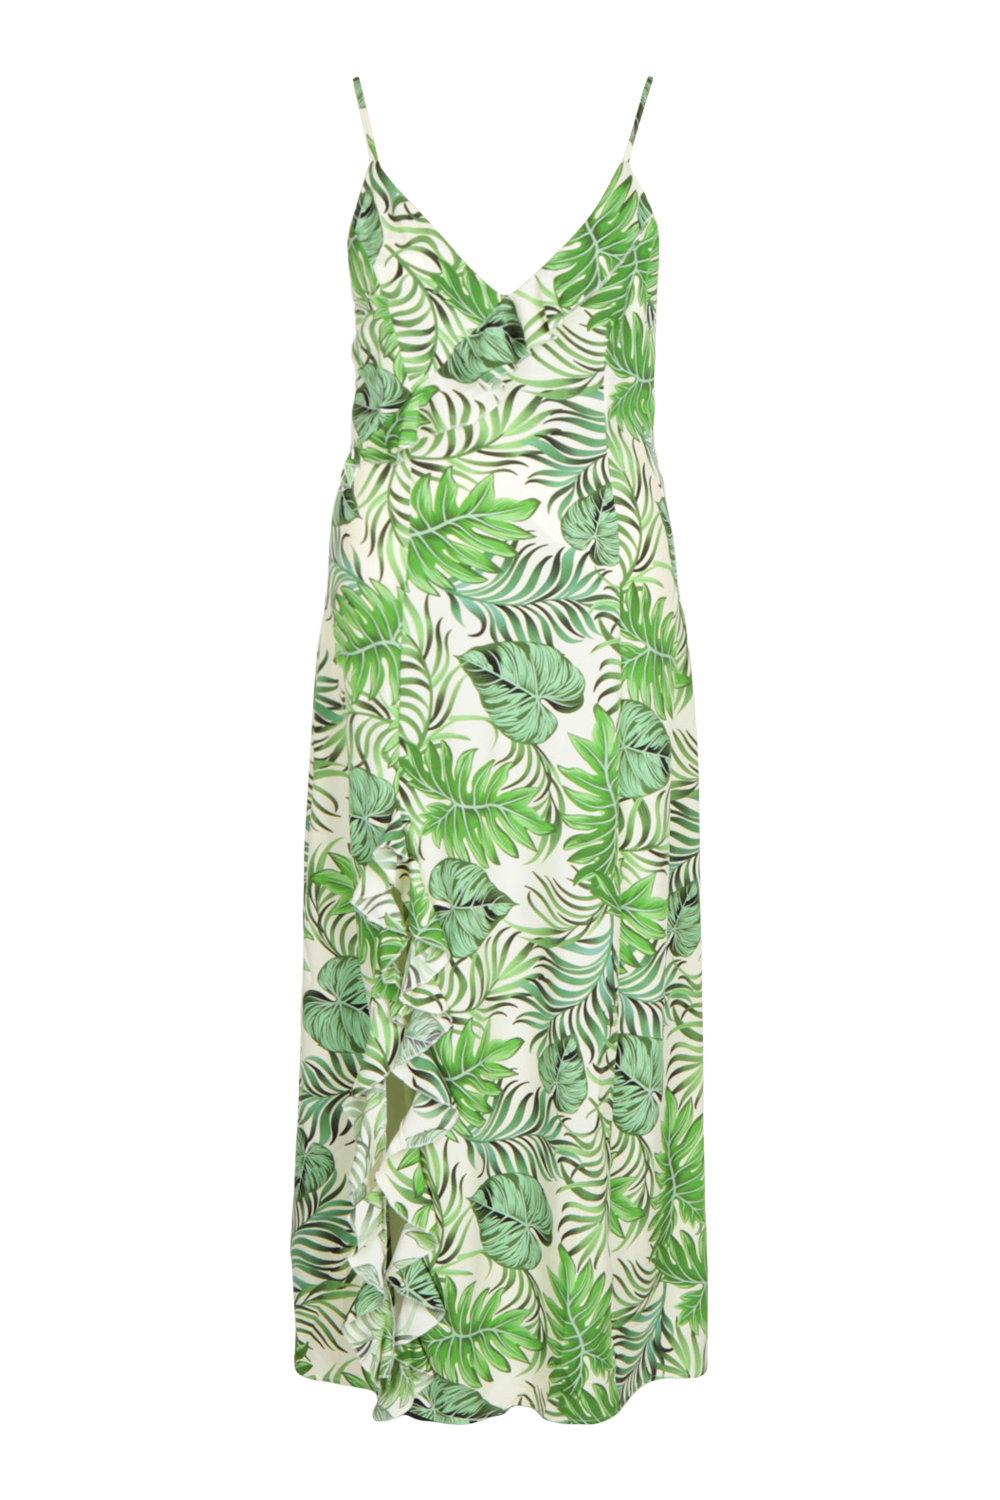 Plus Hawaiian Print Strappy Split Maxi Dress